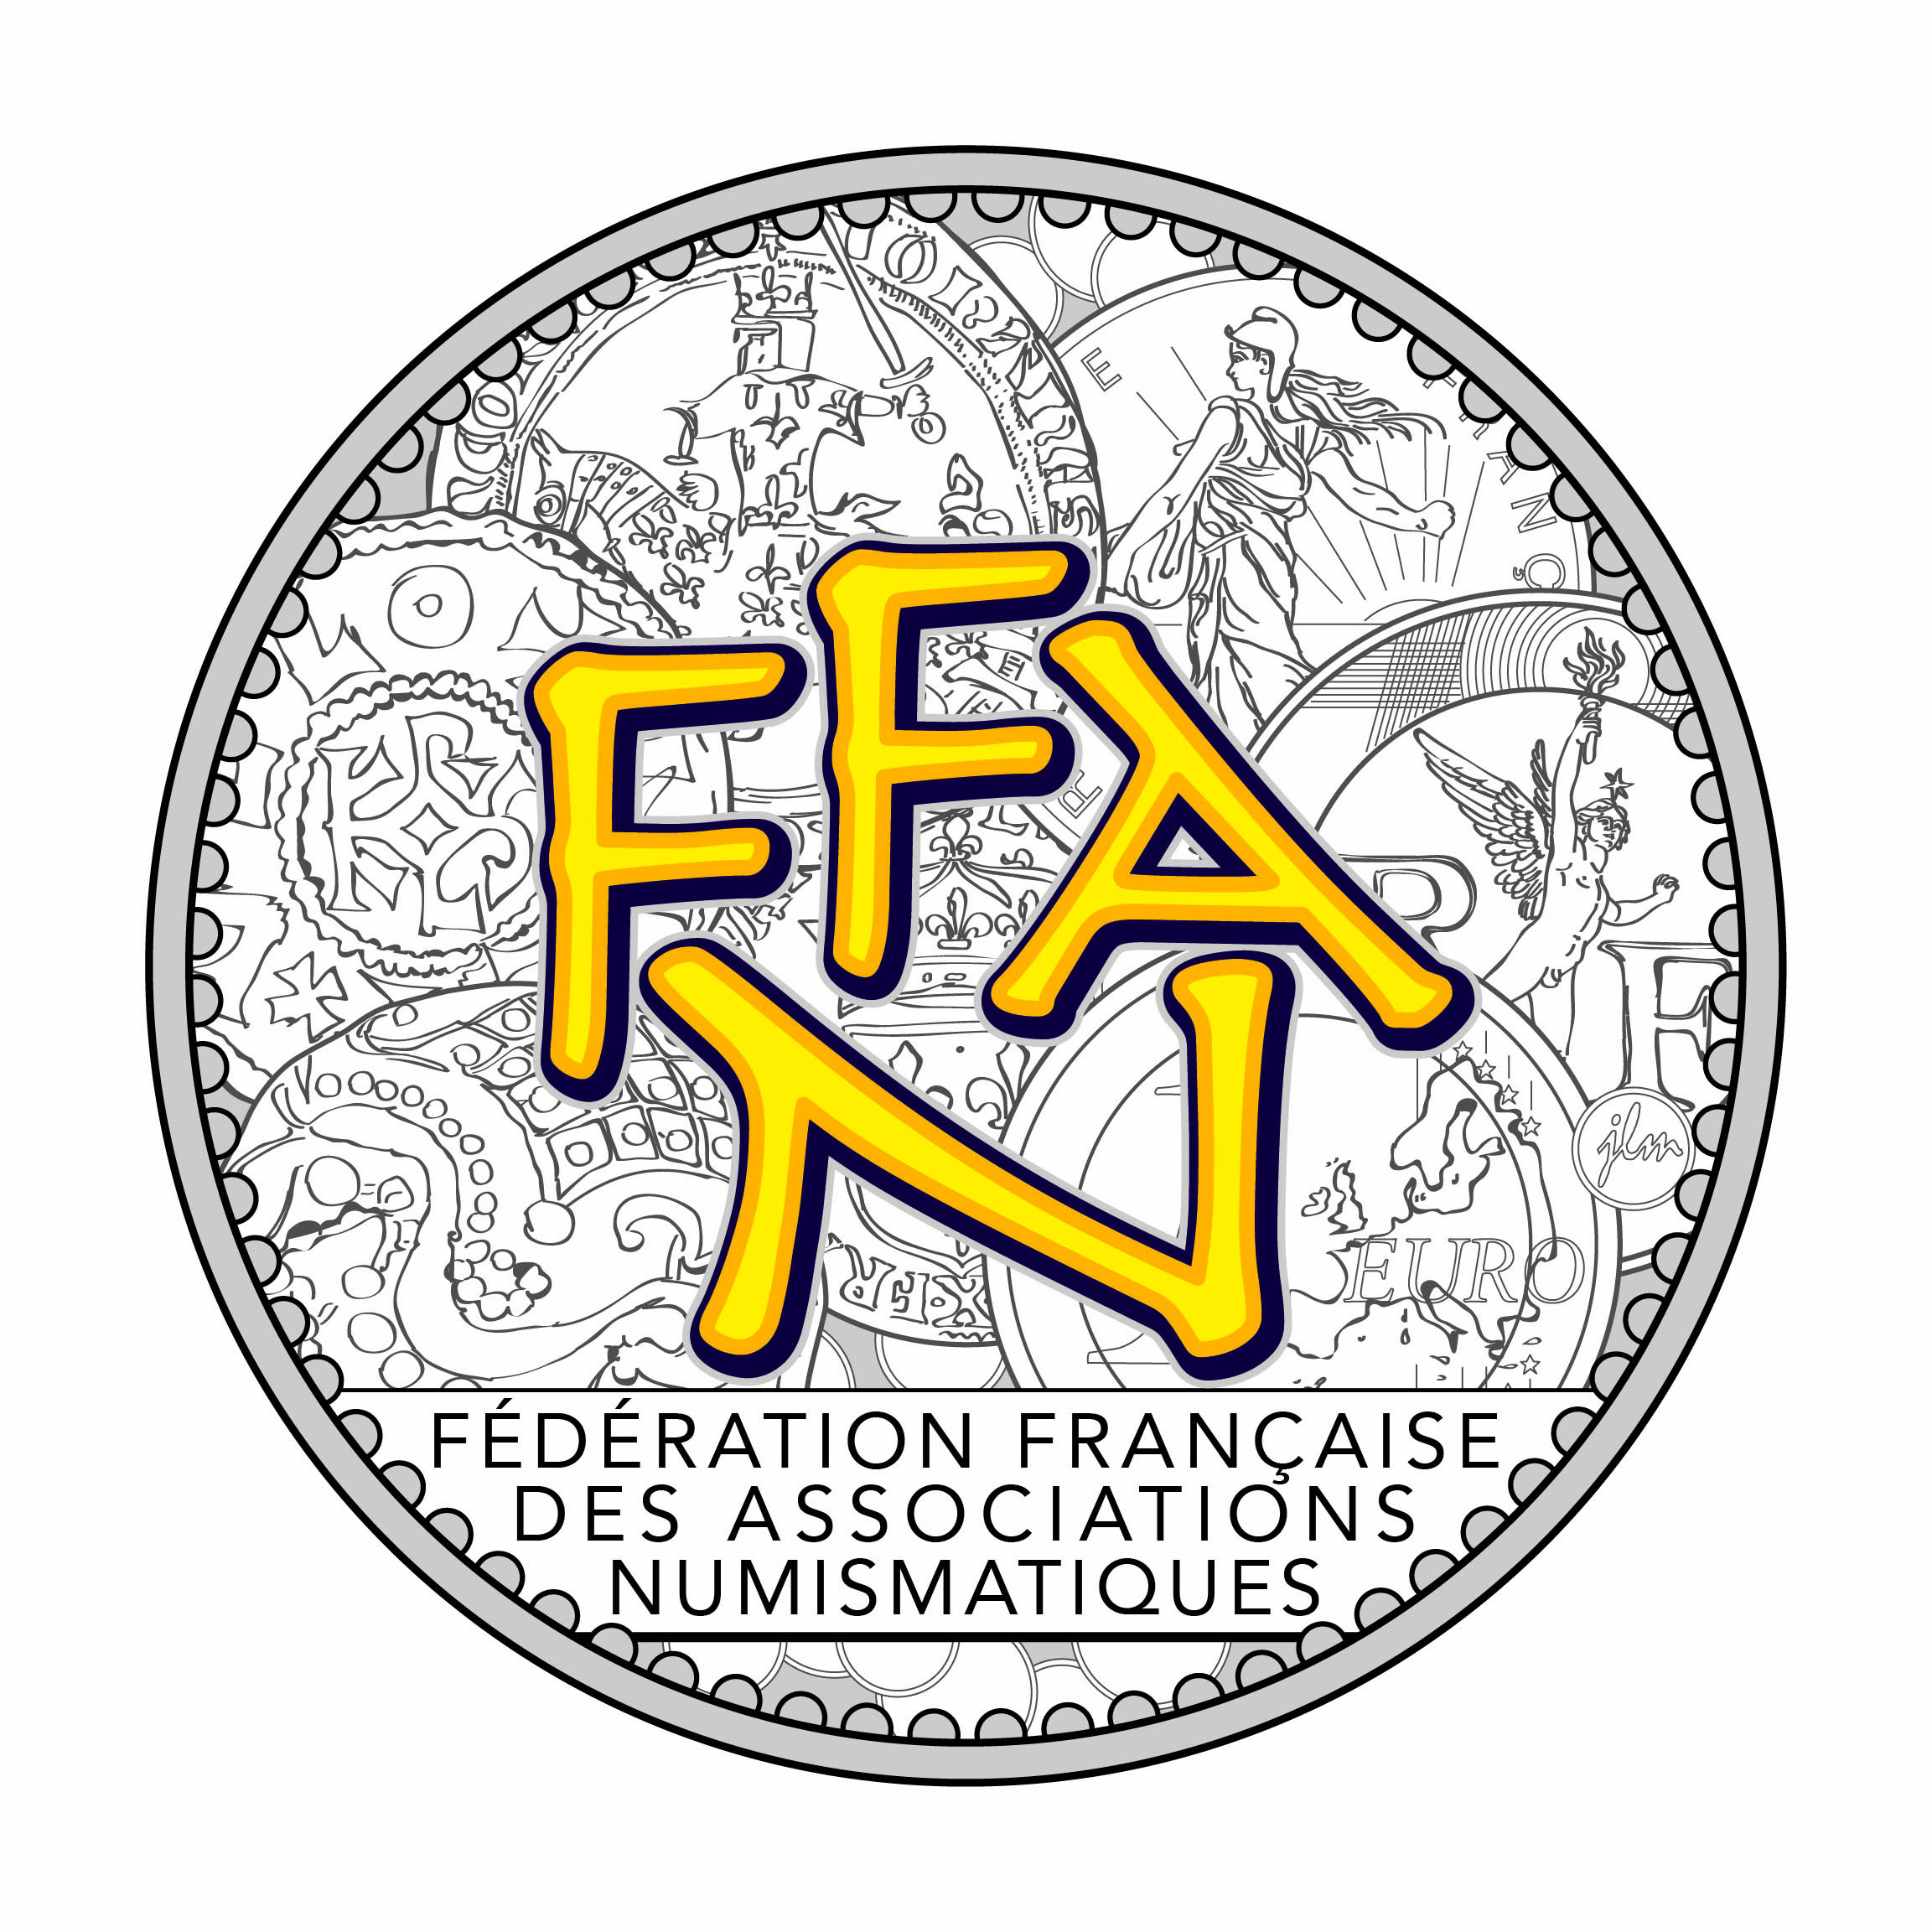 Logo FFAN 2018 definitif.jpg - 591,08 kB